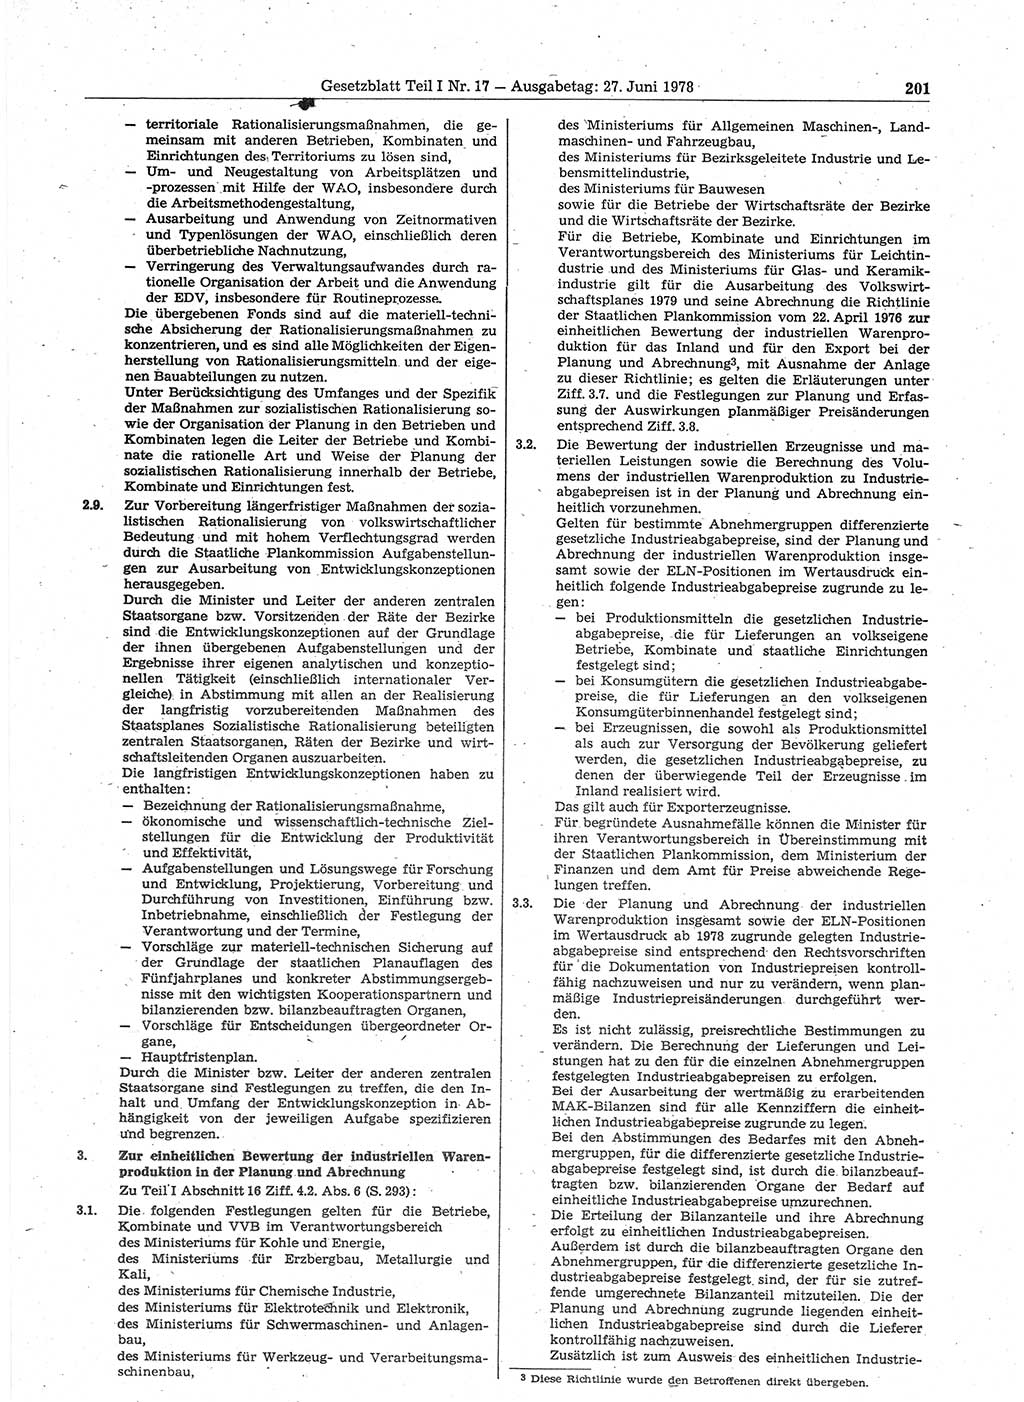 Gesetzblatt (GBl.) der Deutschen Demokratischen Republik (DDR) Teil Ⅰ 1978, Seite 201 (GBl. DDR Ⅰ 1978, S. 201)